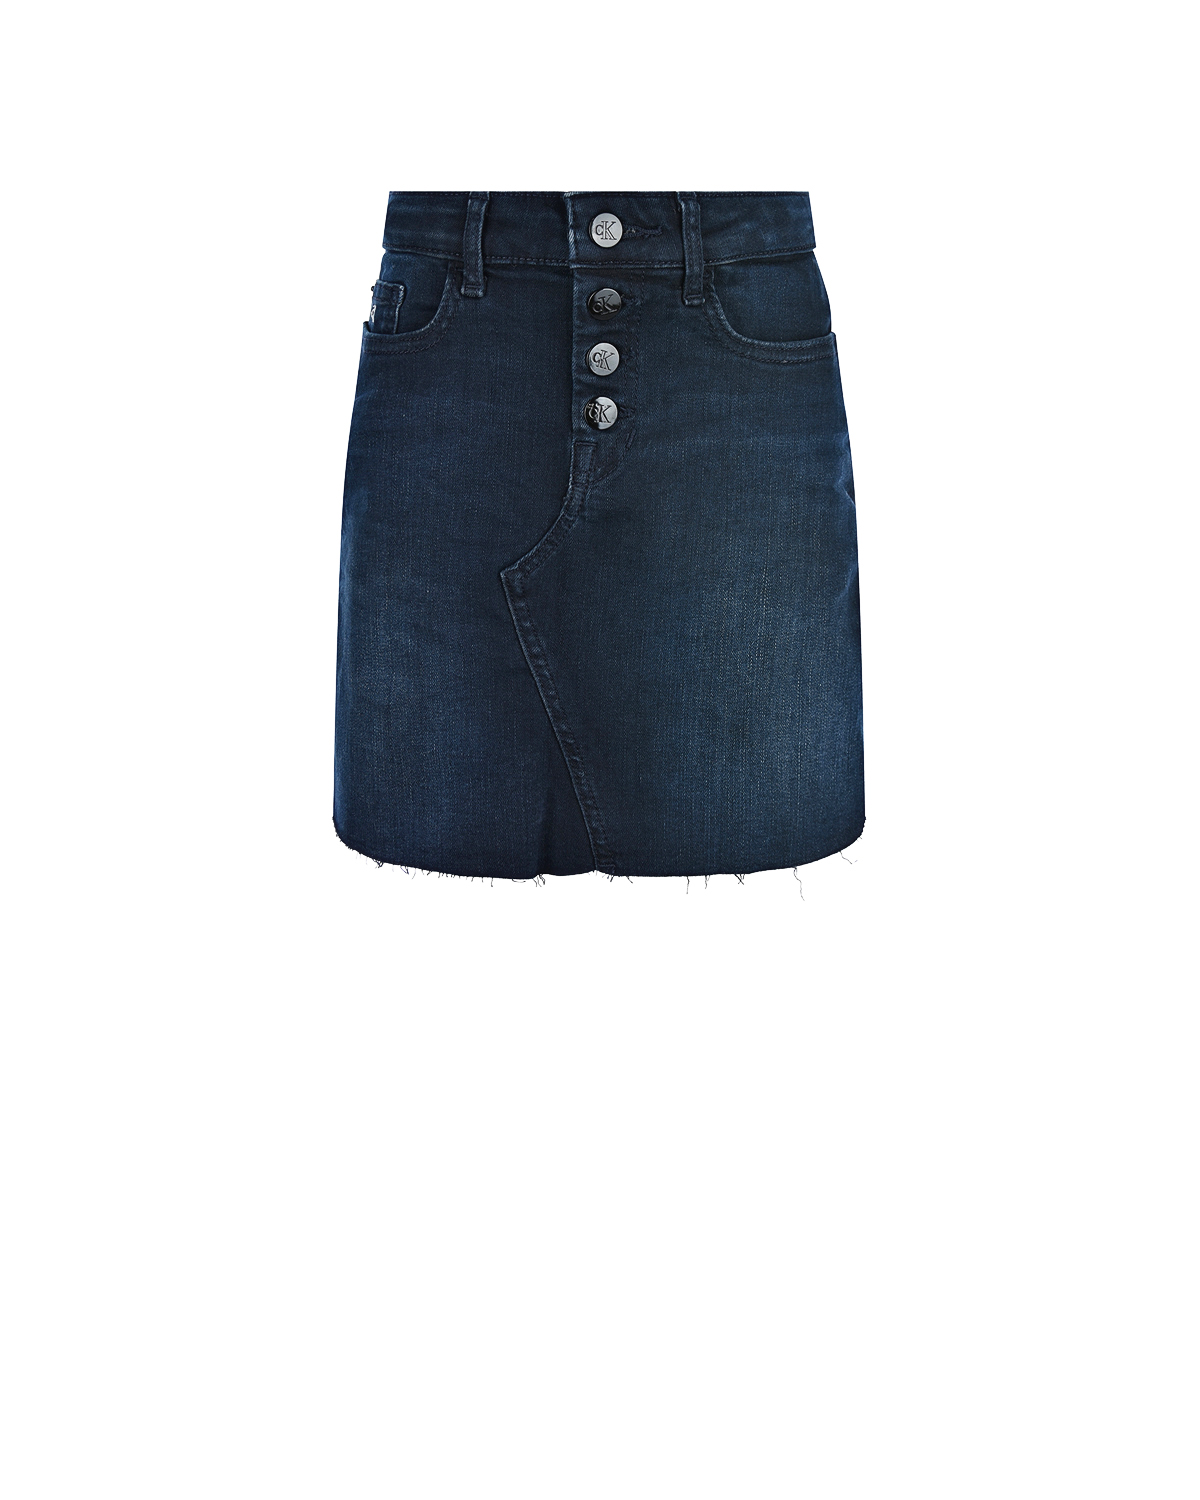 Джинсовая юбка на пуговицах Calvin Klein детская, размер 164, цвет синий - фото 1